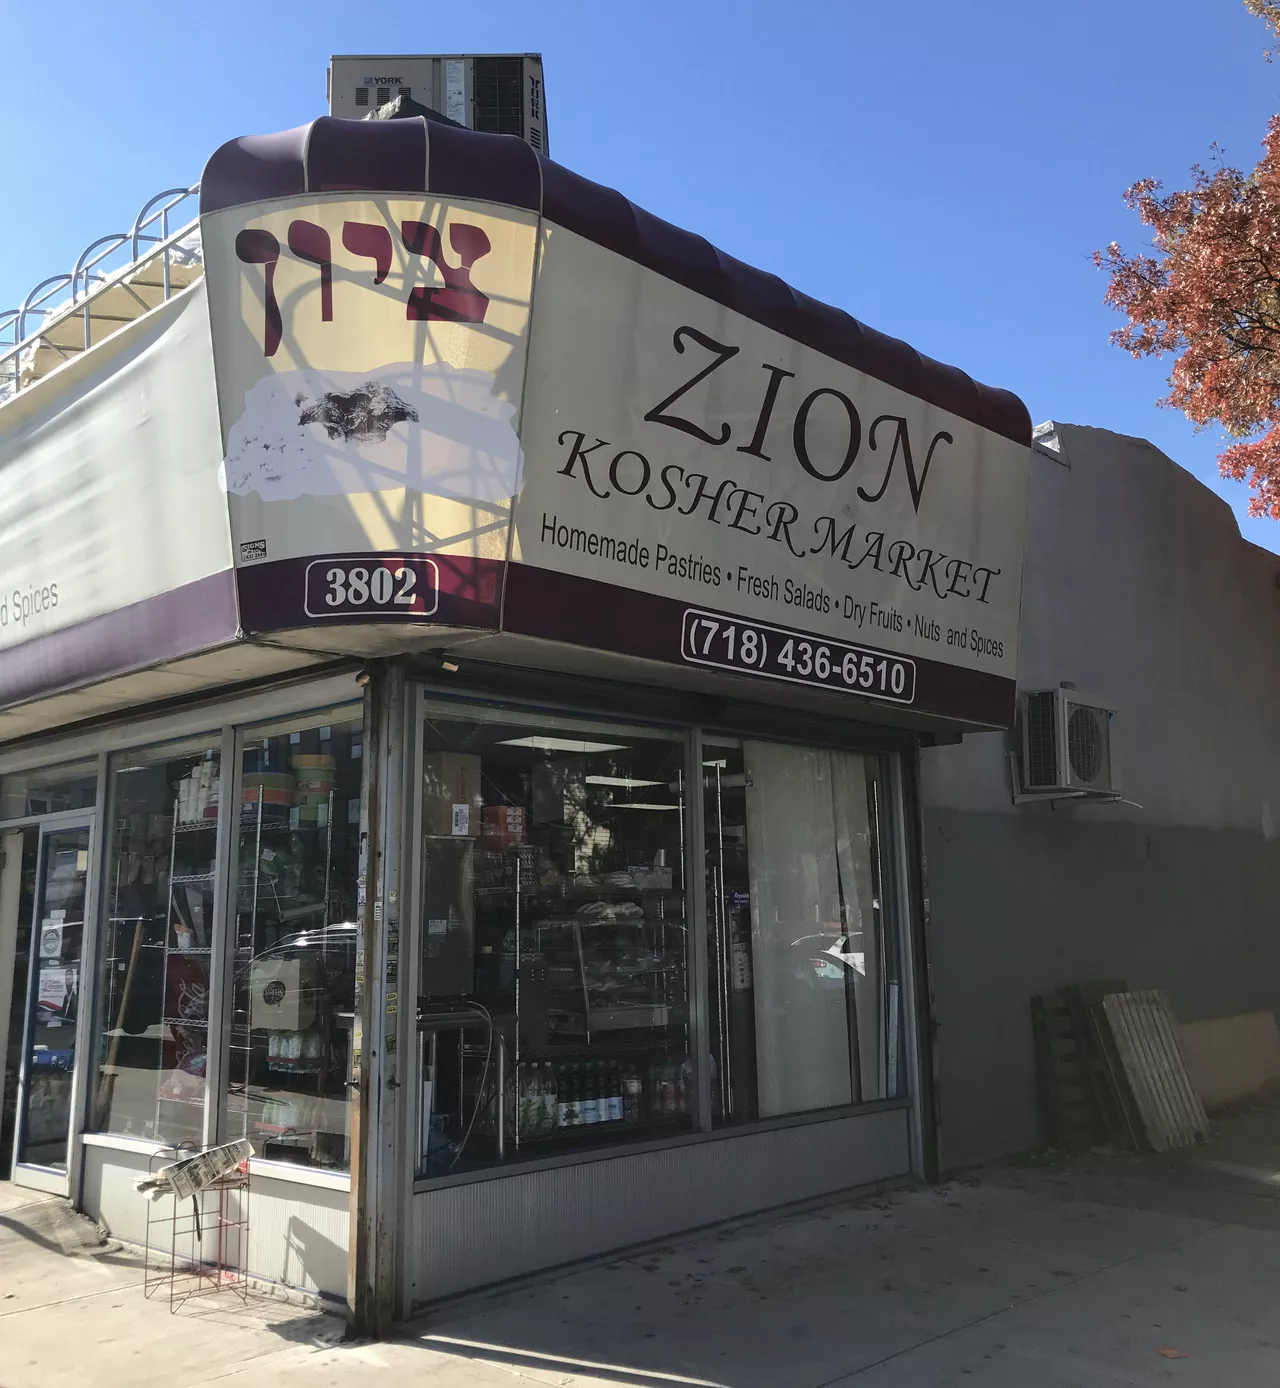 Zion Kosher Market